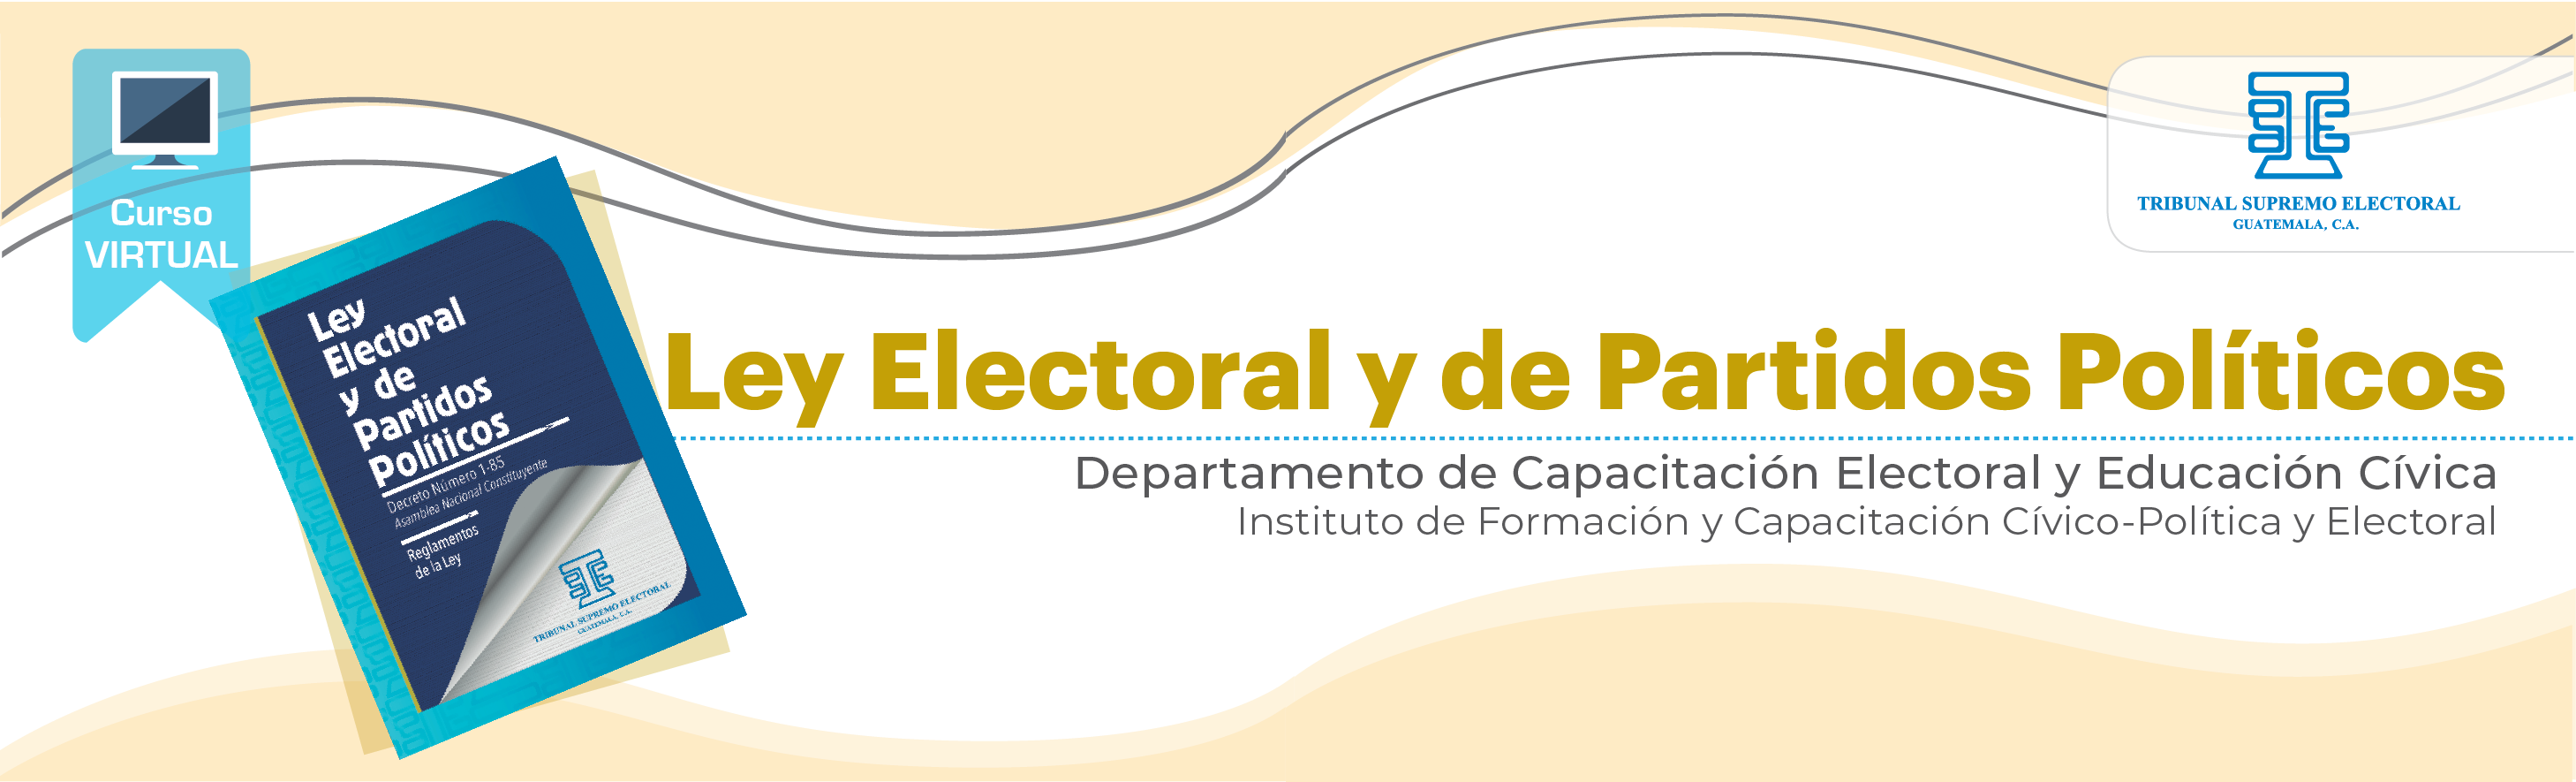 Ley Electoral y de Partidos Políticos 2022 G